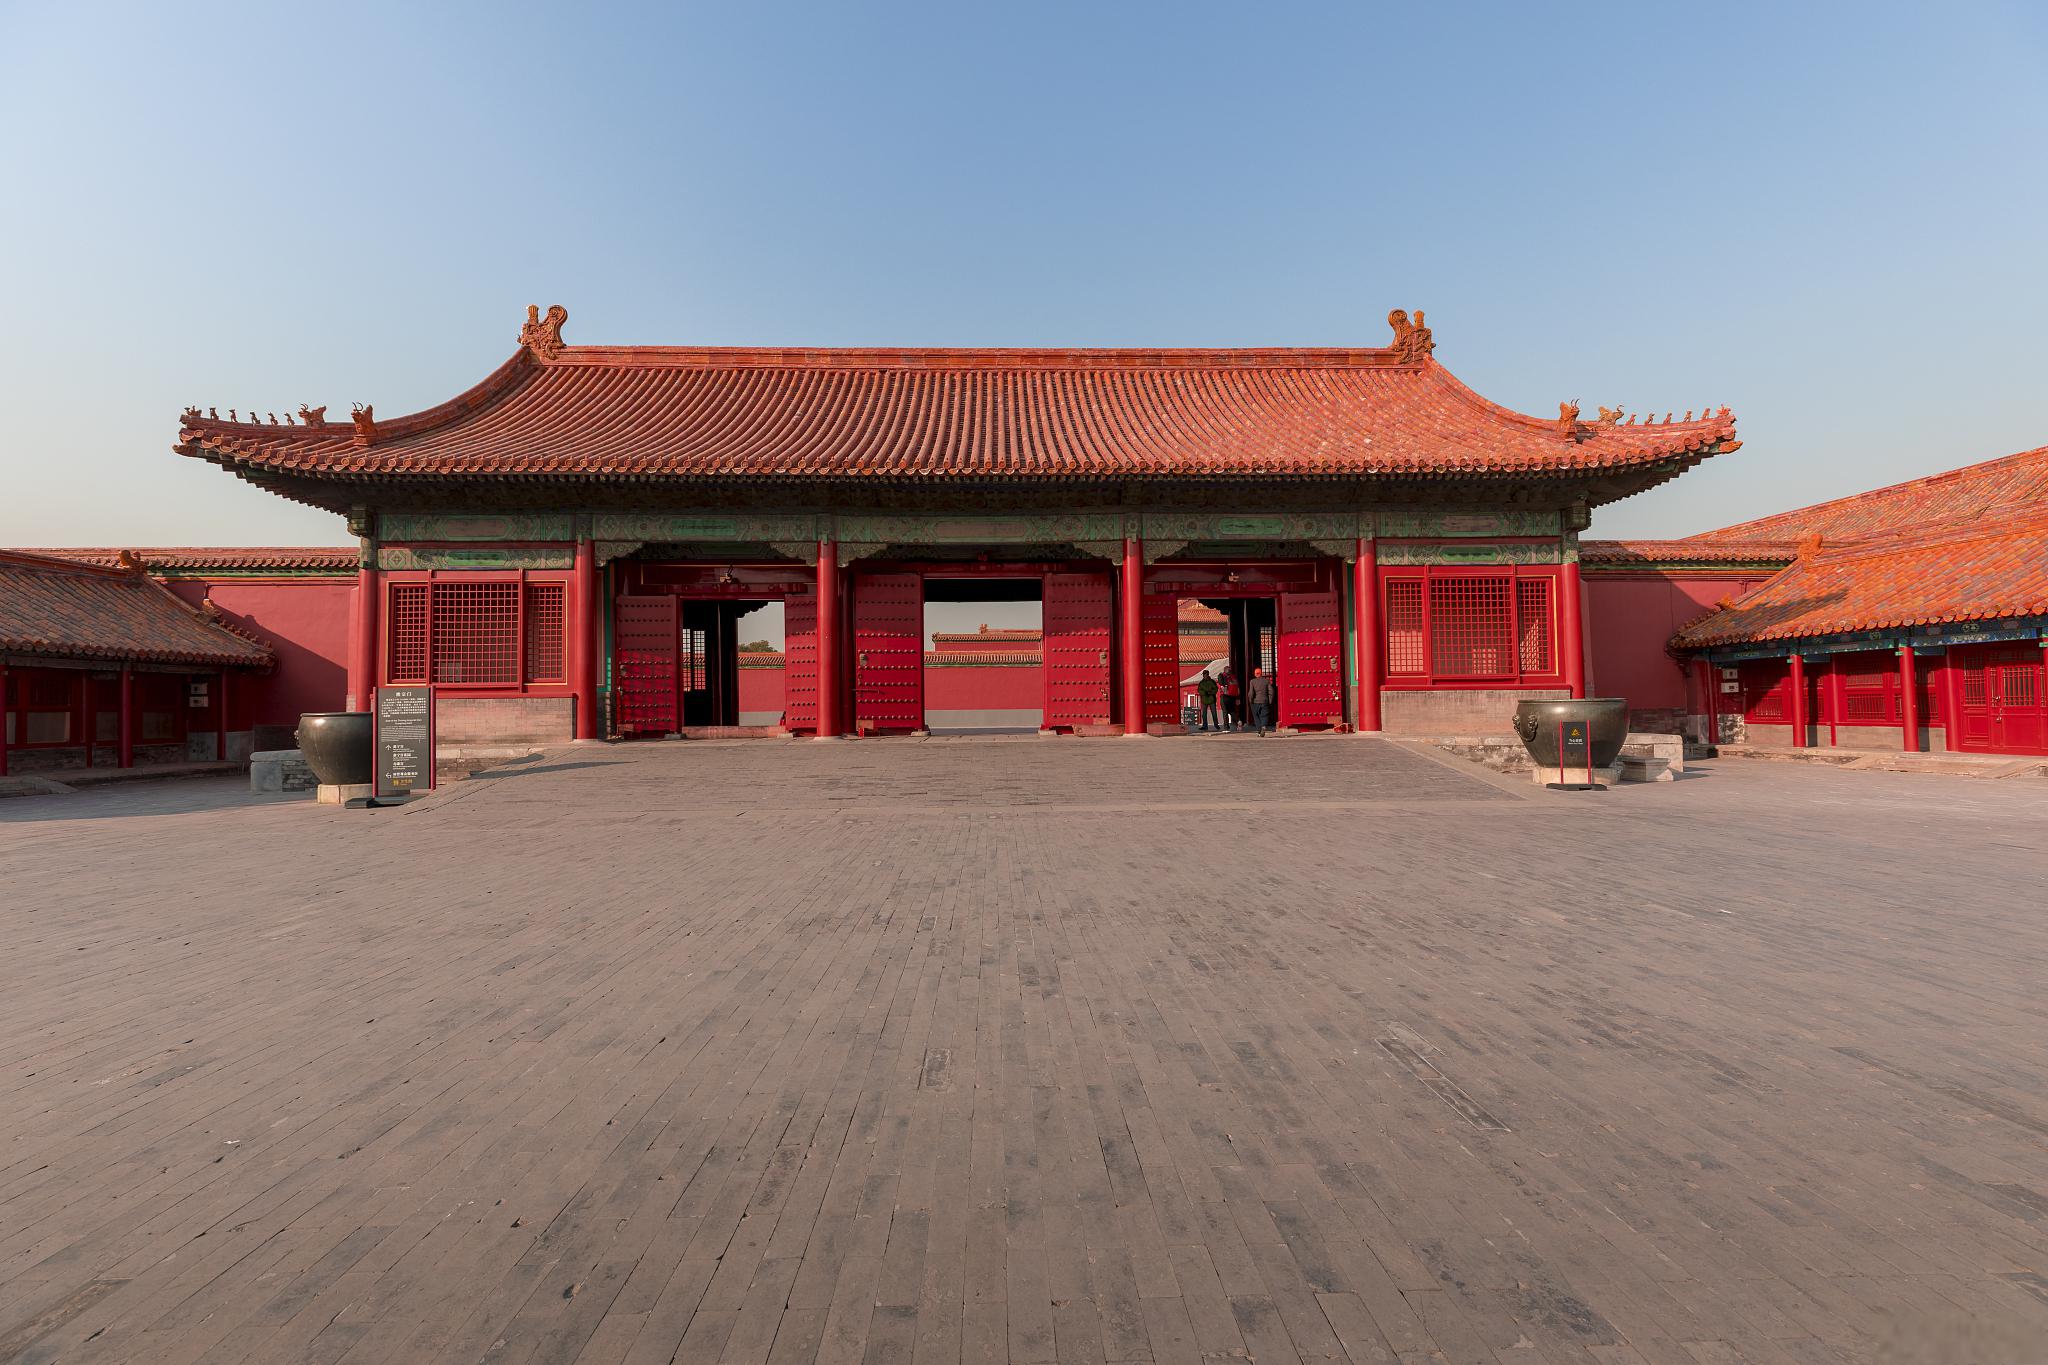 沈阳故宫盖章攻略:留下你的专属印记 沈阳故宫,作为中国最早的皇家